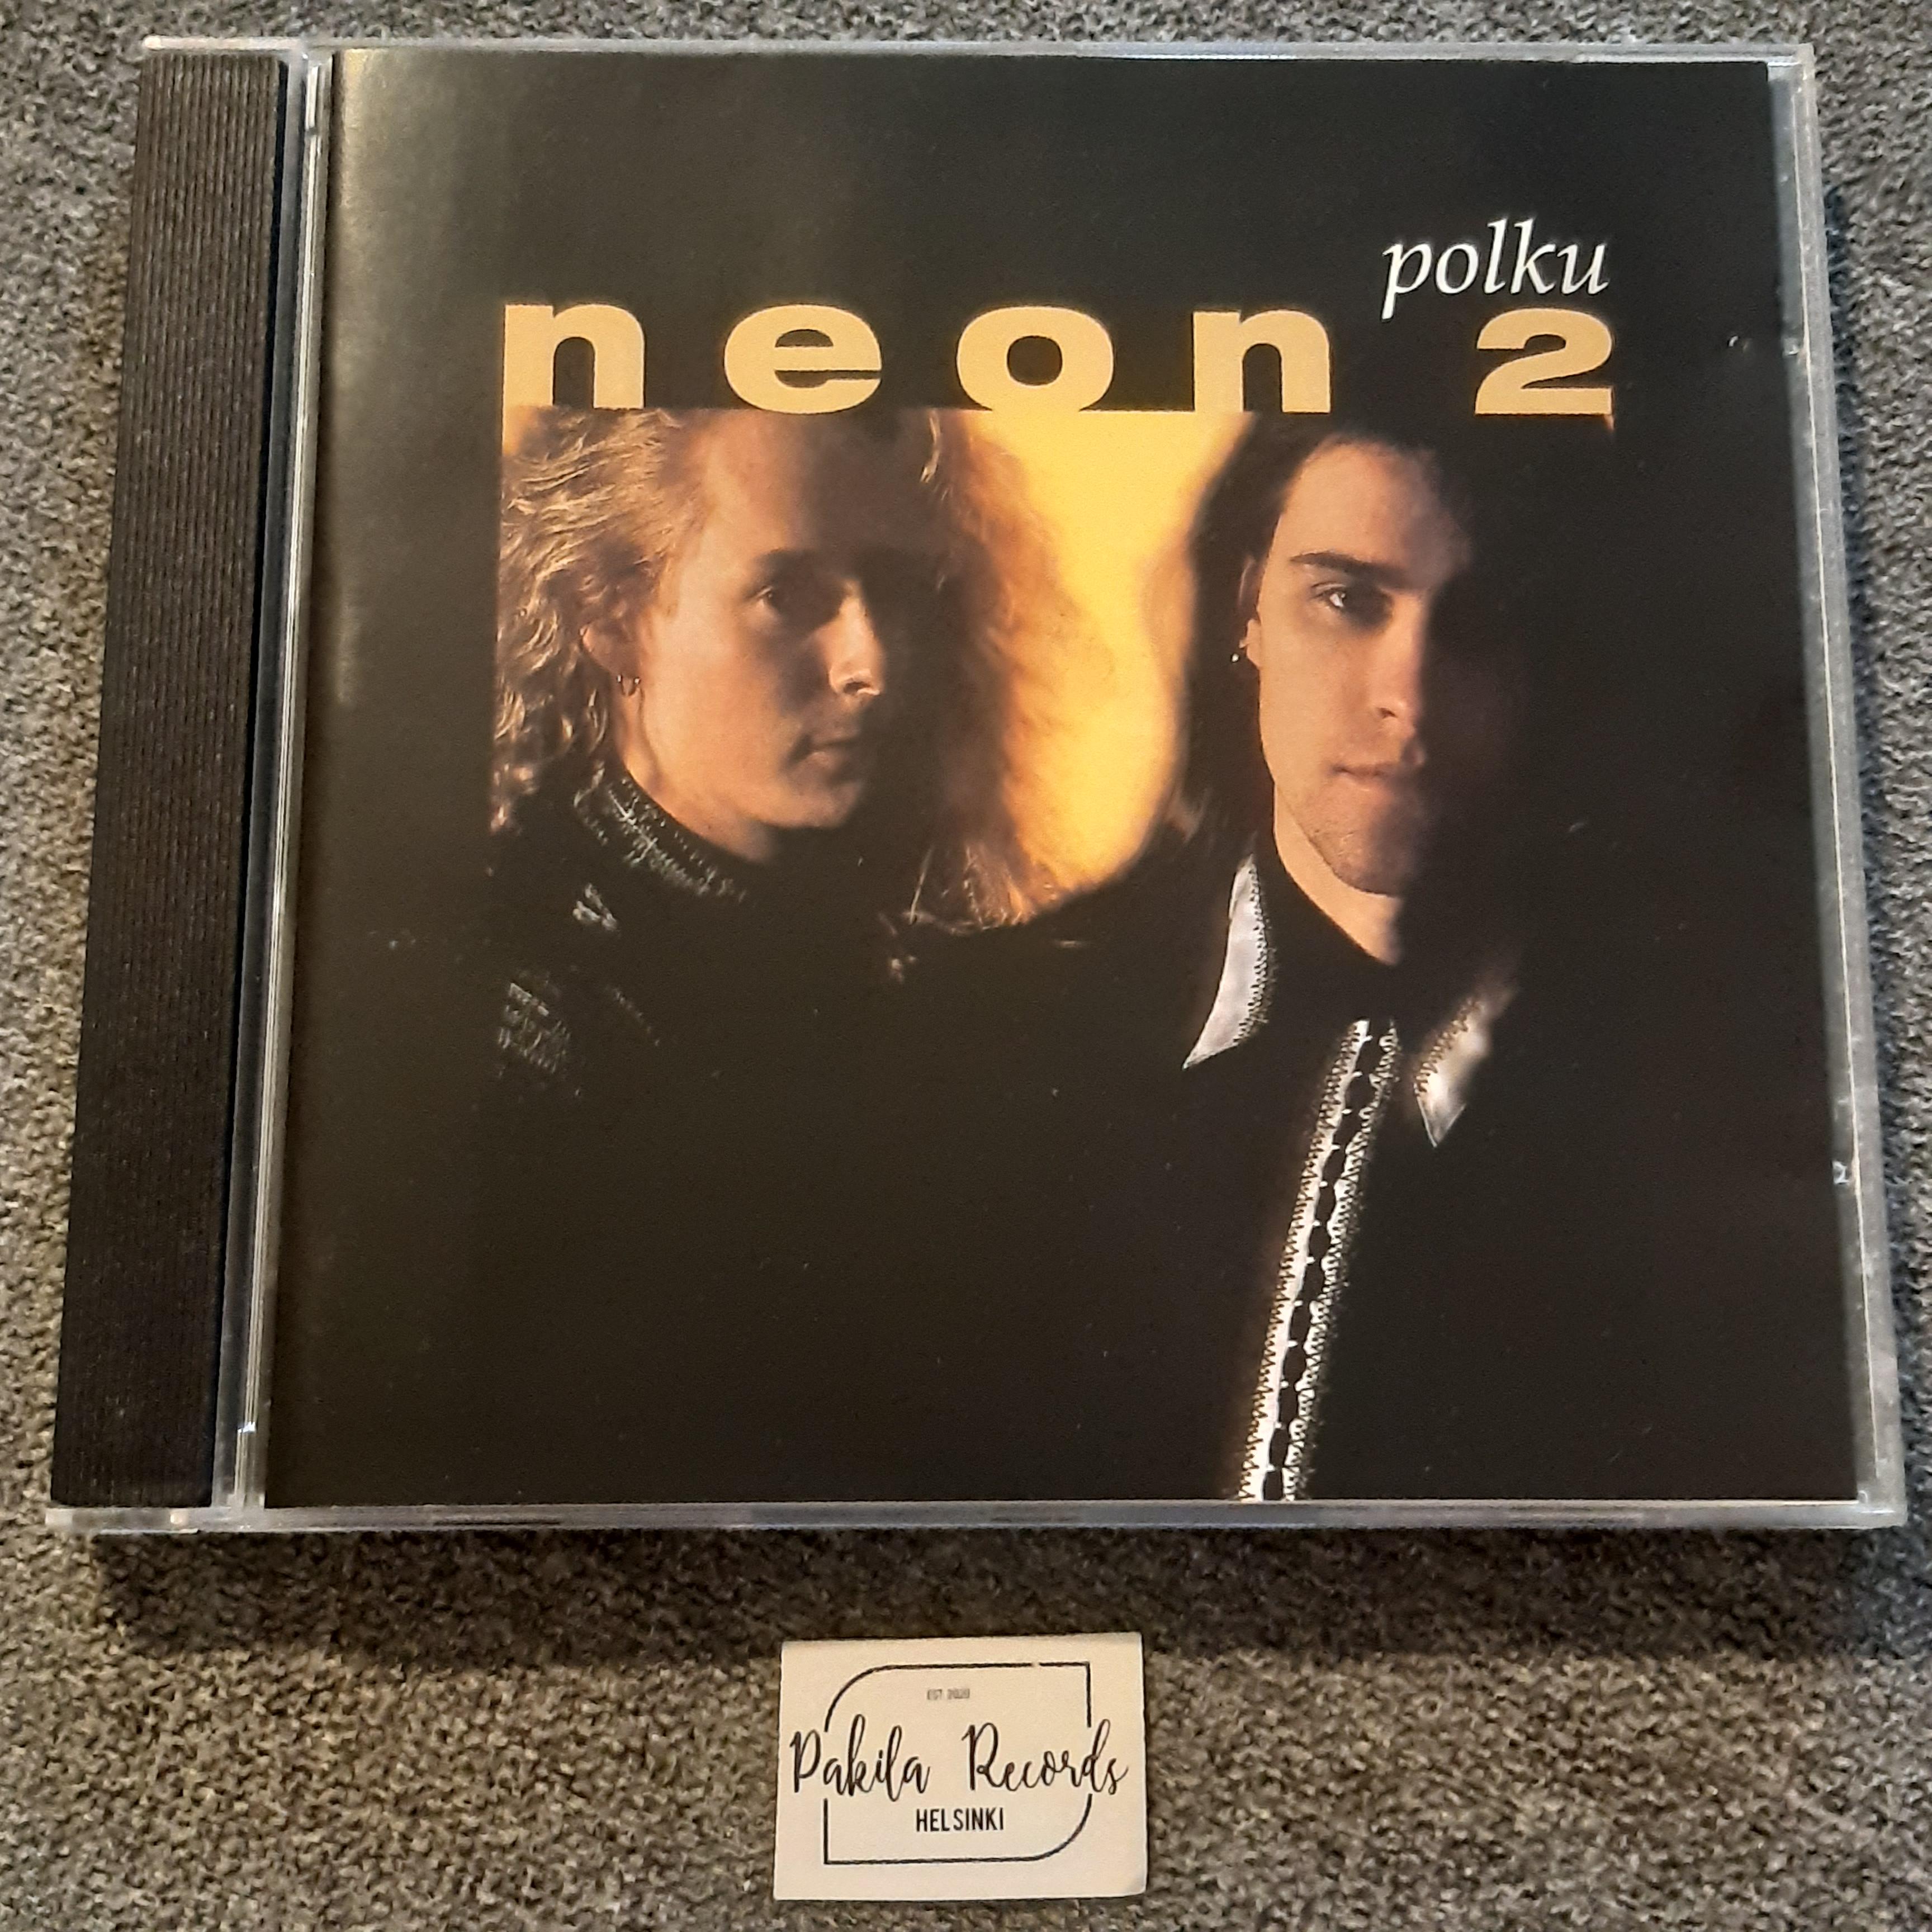 Neon 2 - Polku - CD (käytetty)